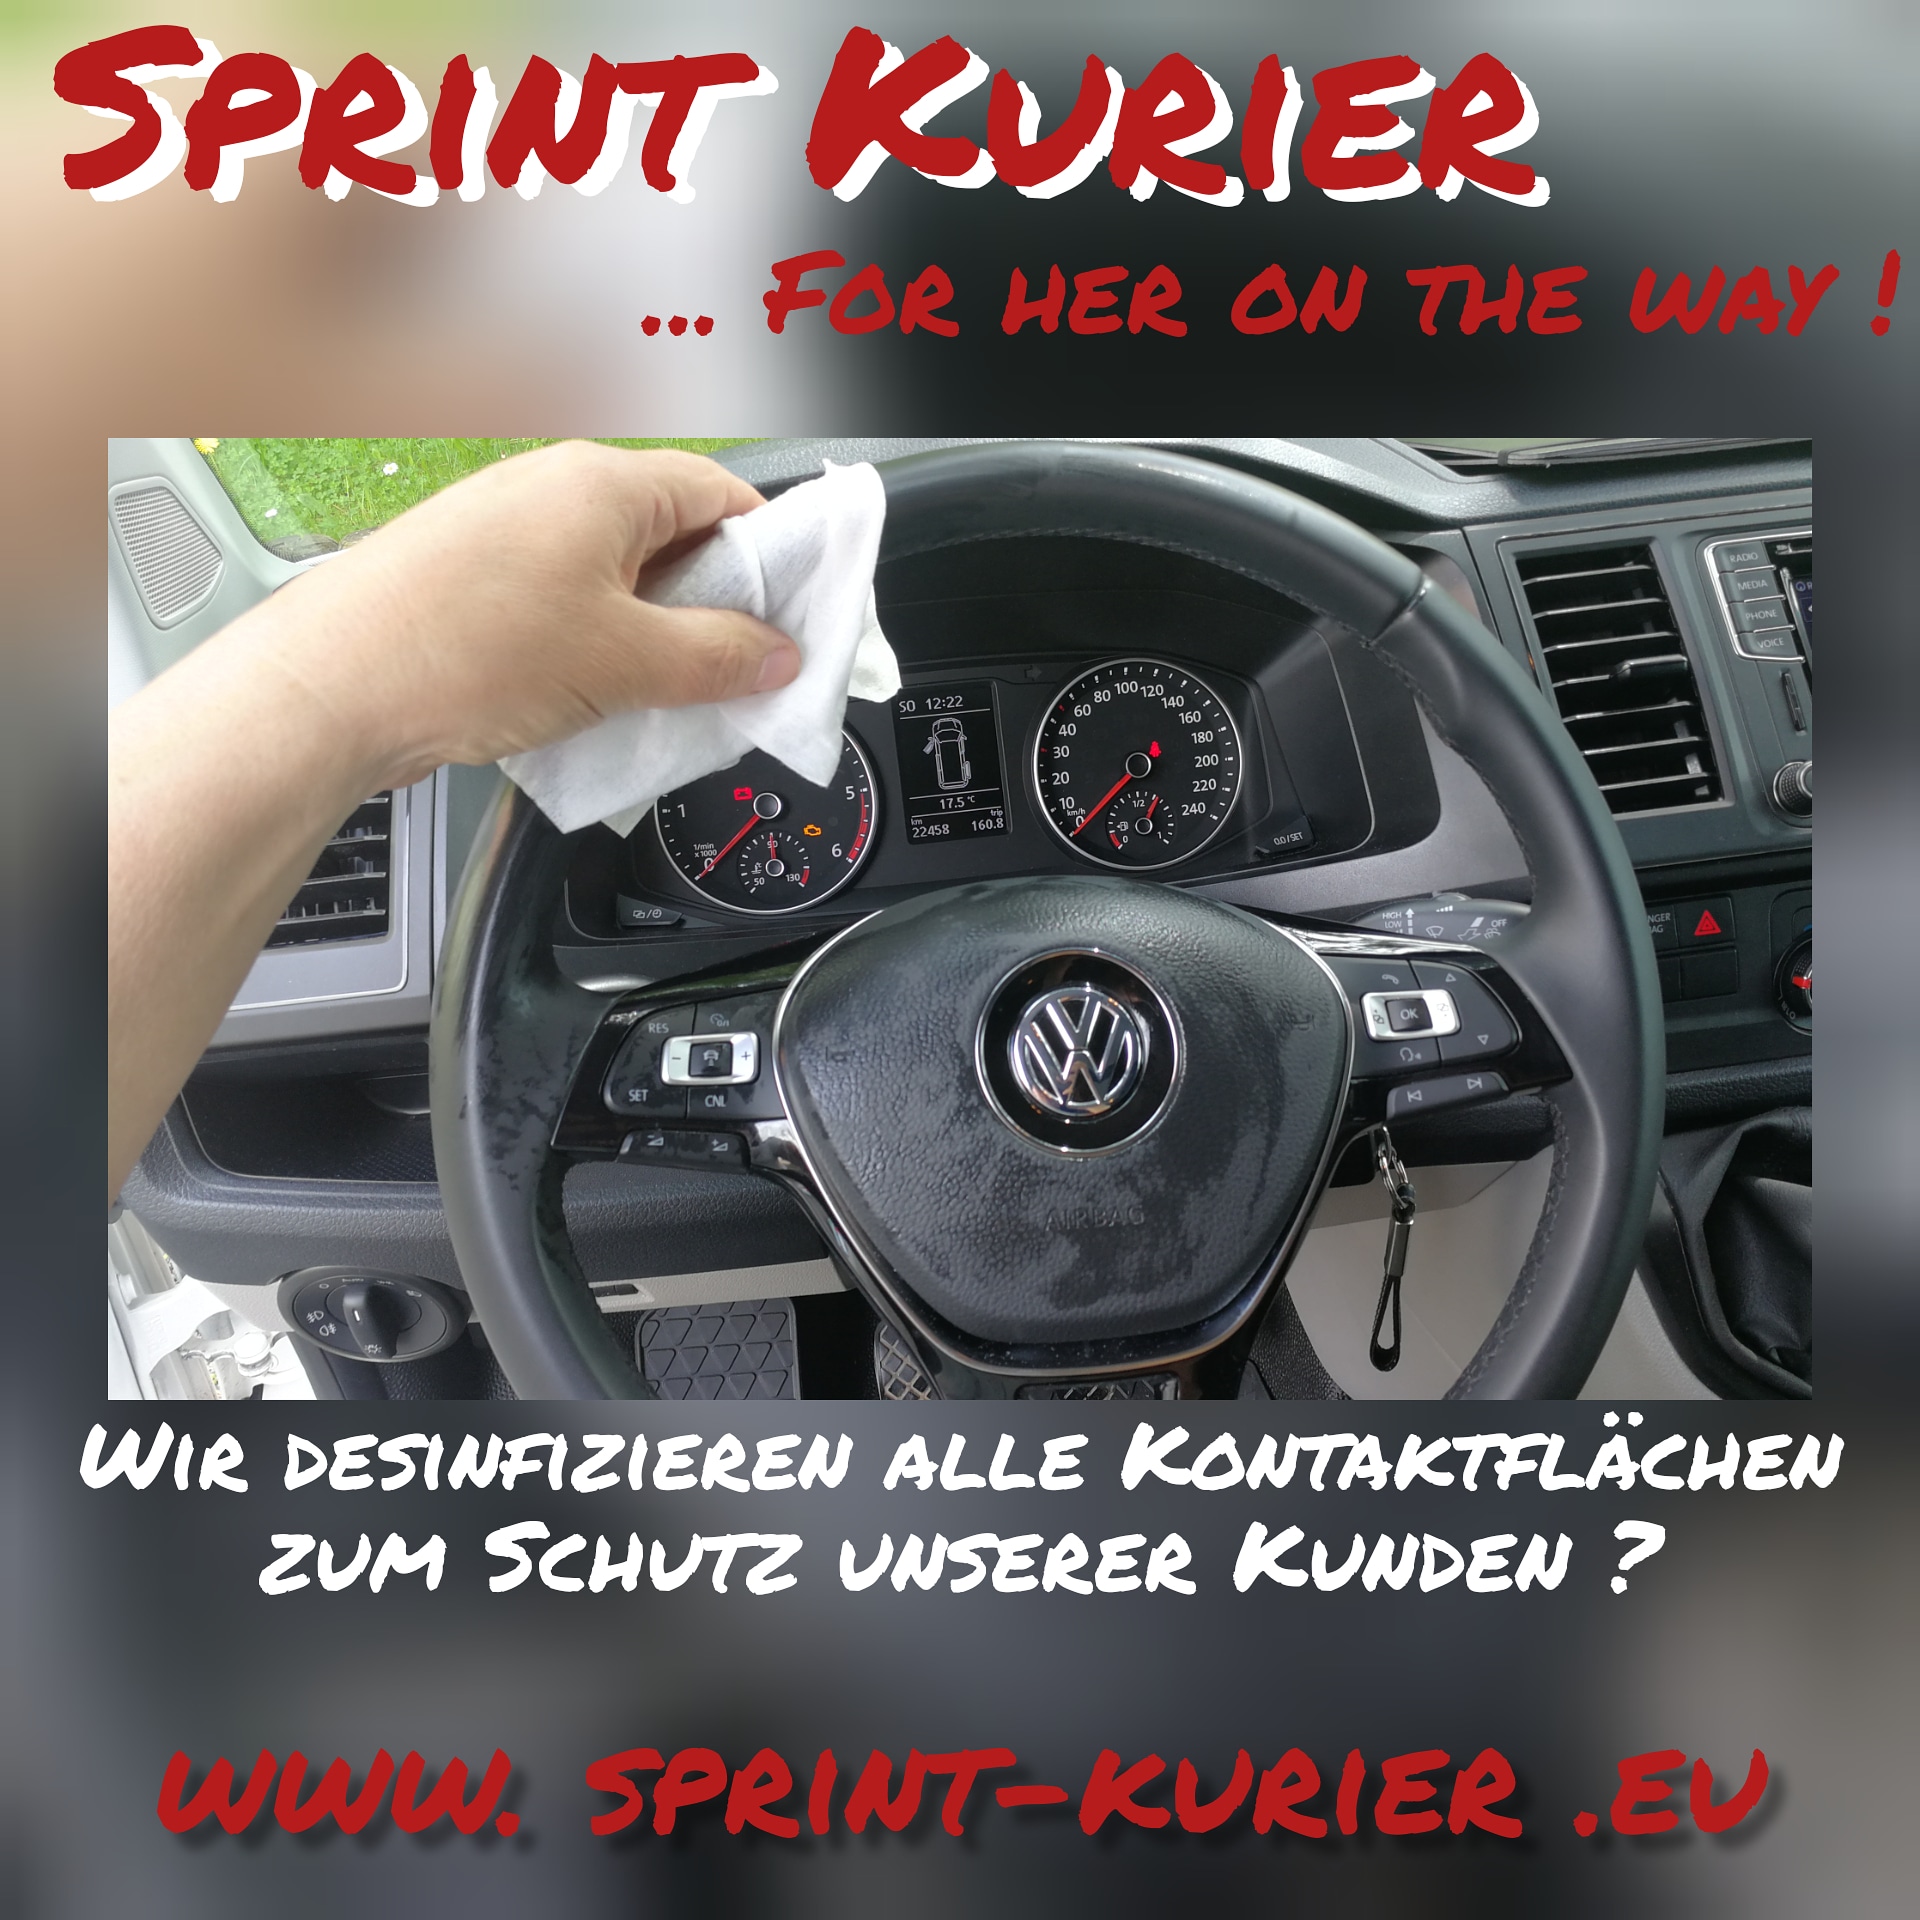 Bild 1 Sprint-Kurier Schröder in Schmalkalden